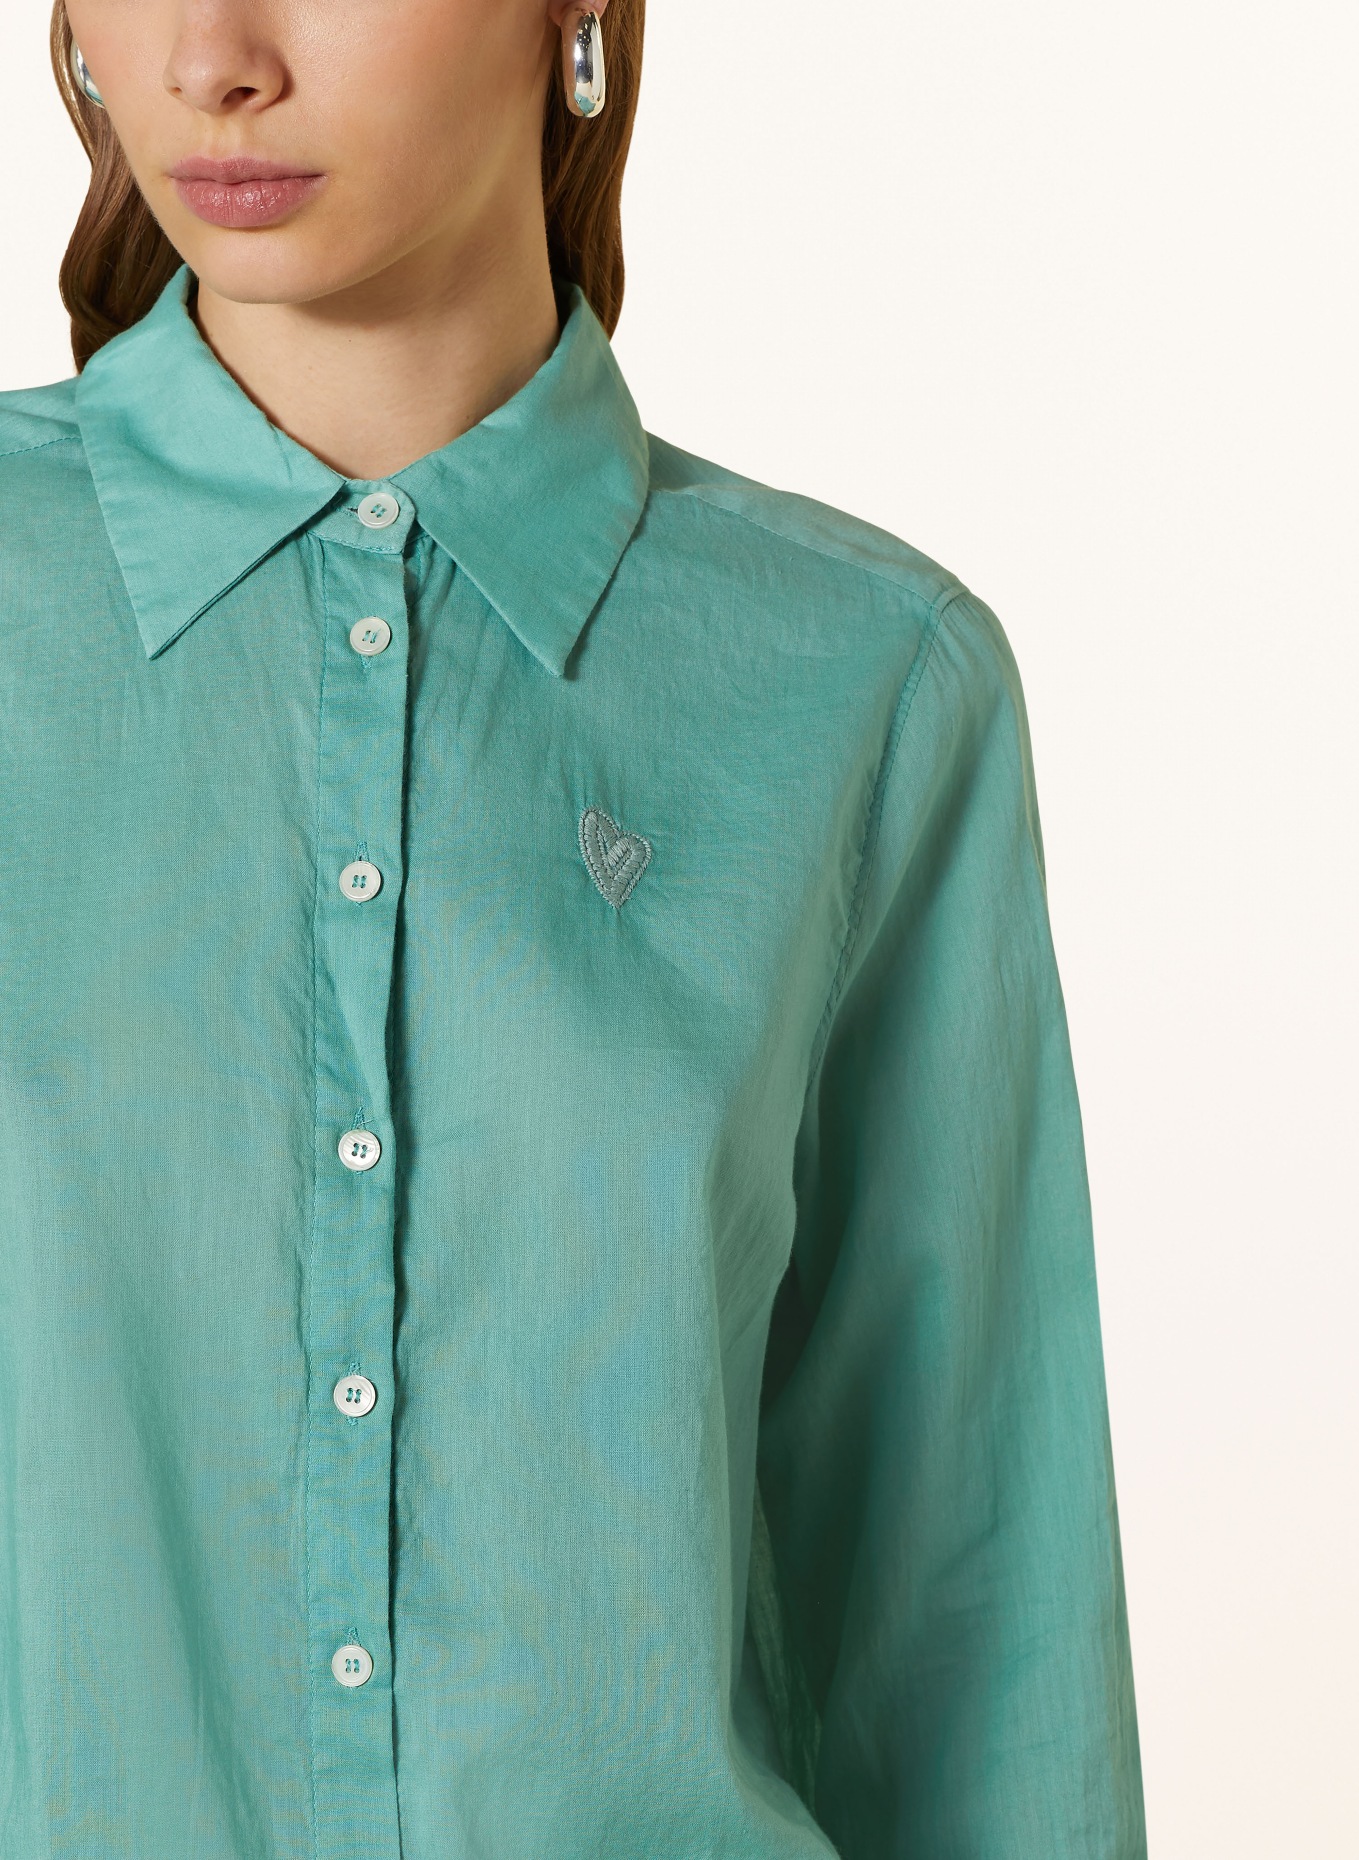 MOS MOSH Shirt blouse MMVINA, Color: MINT (Image 4)